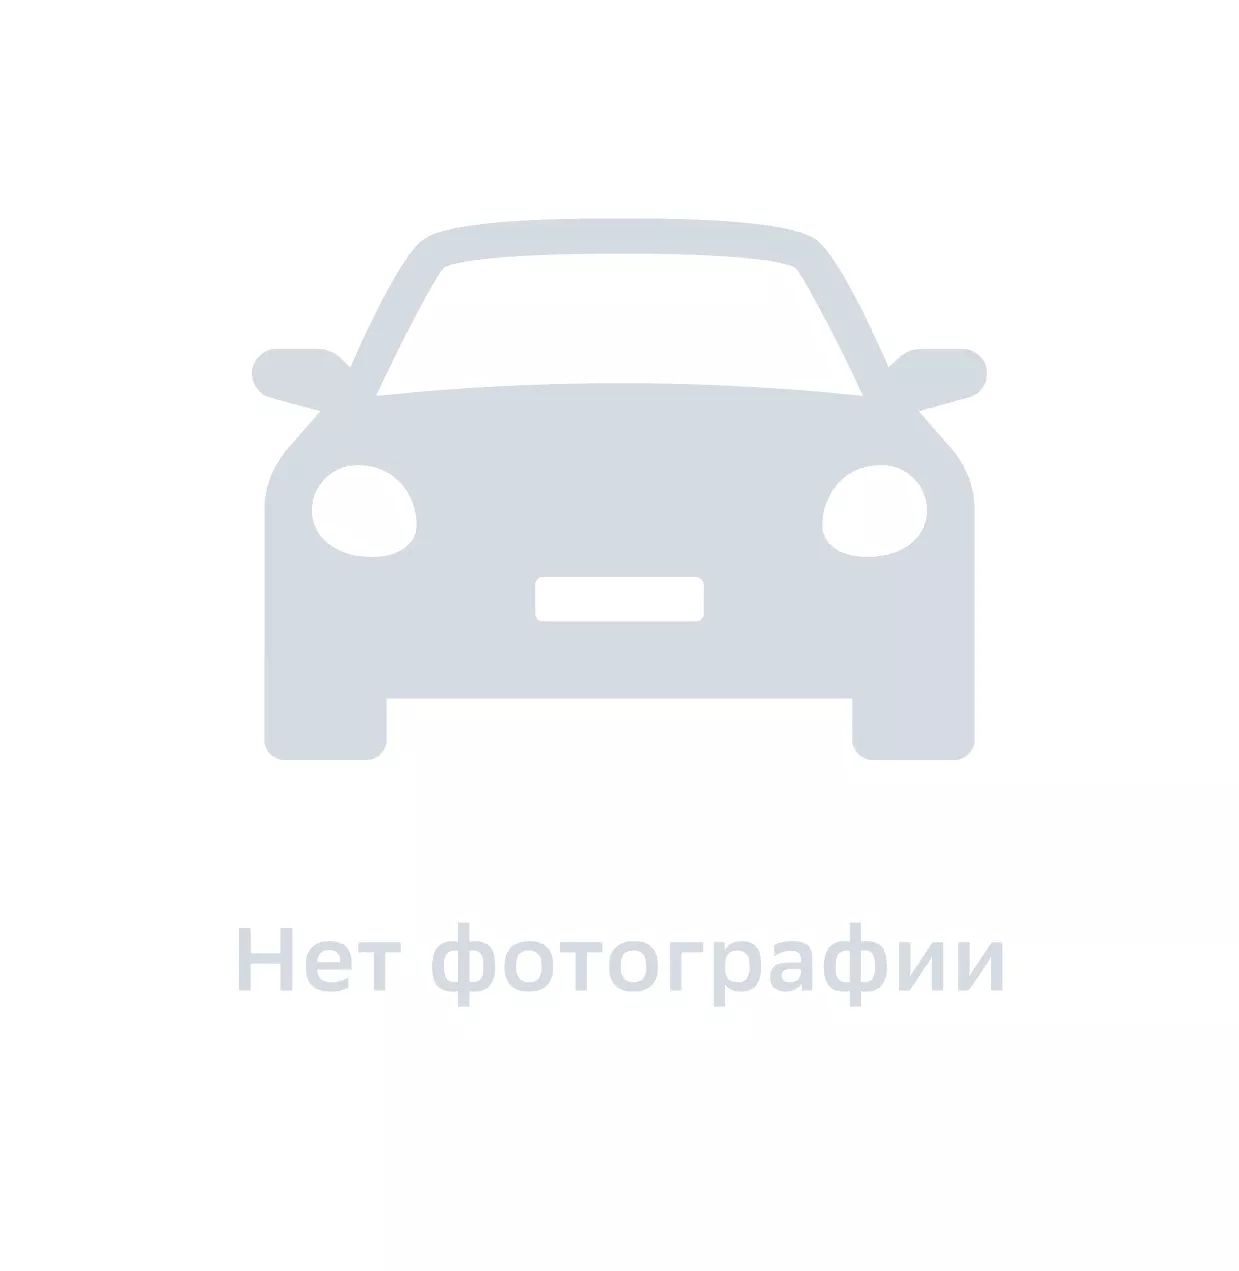 Болт автомобильный, GM DAT, арт. 94501850, цена за 1 шт.